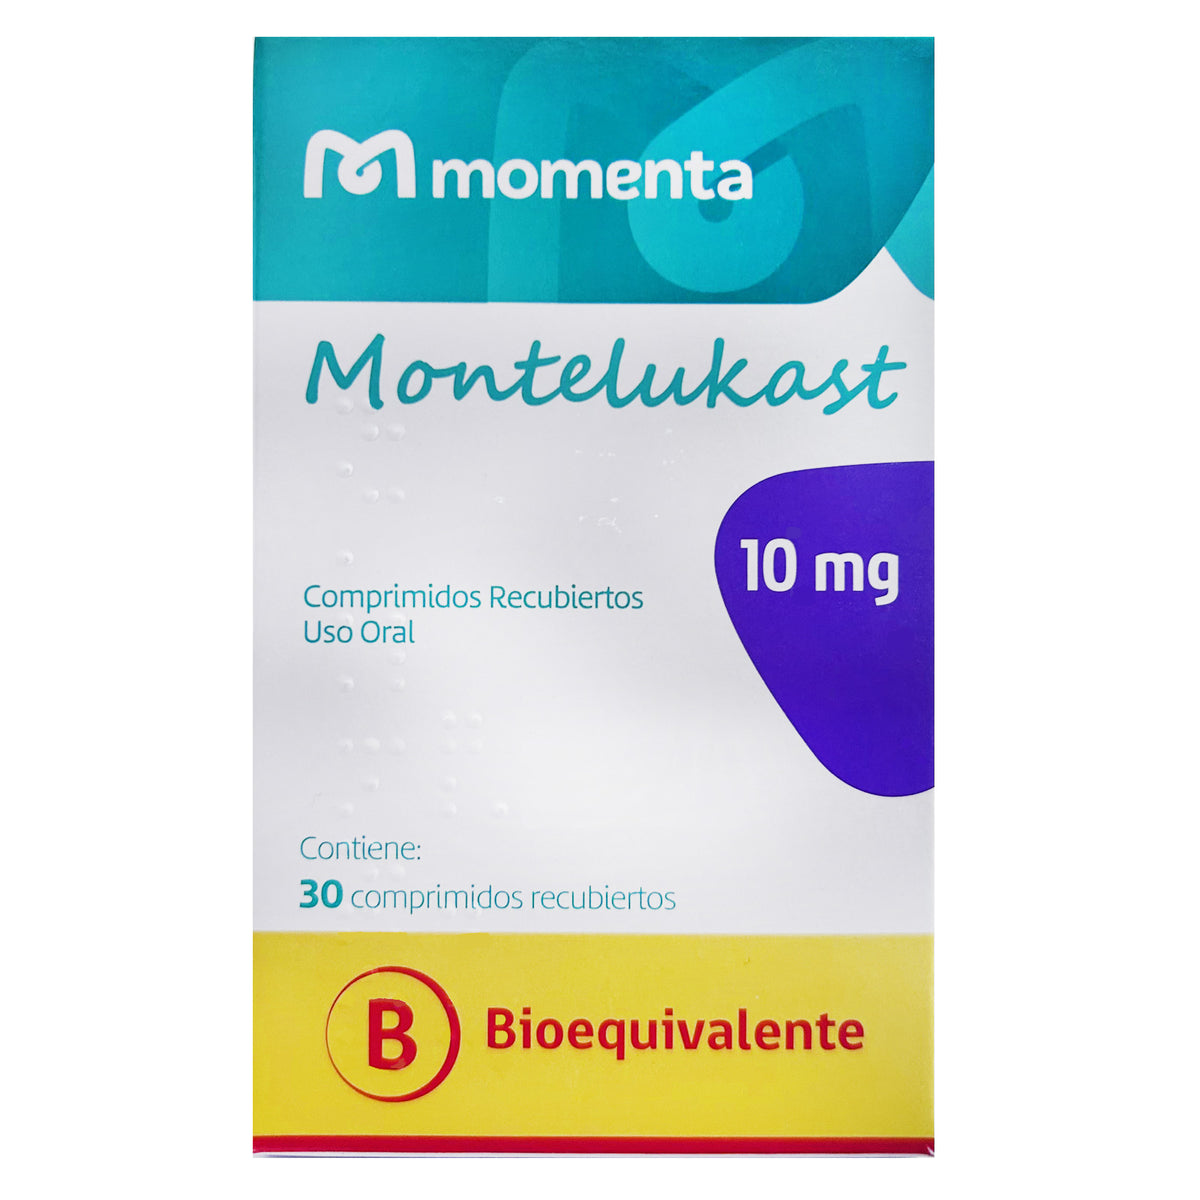 Montelukast Comprimidos Recubiertos 10mg